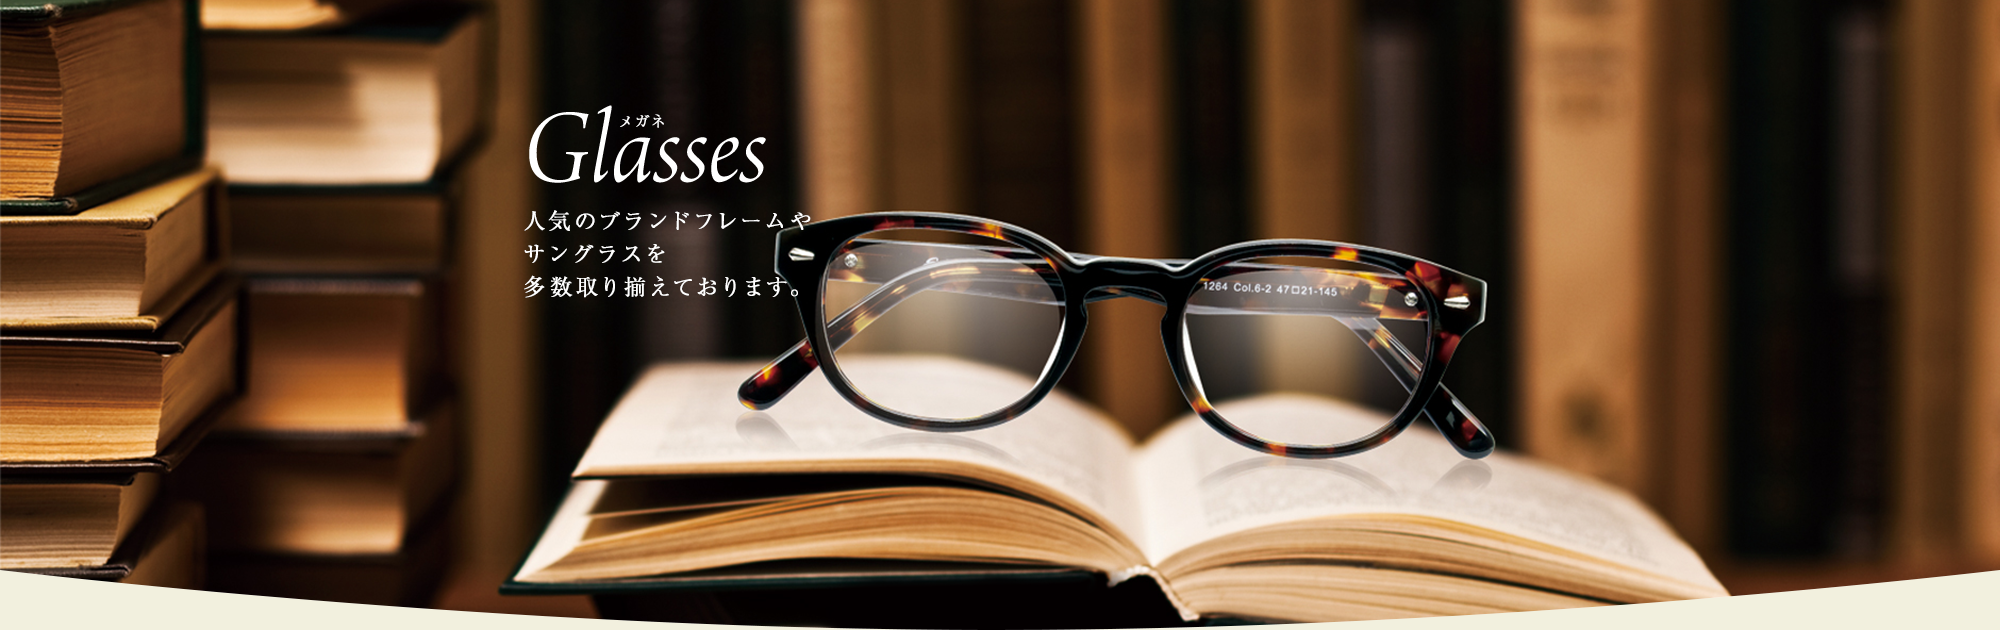 Glasses 人気のブランドフレームやサングラスを多数取り揃えております。